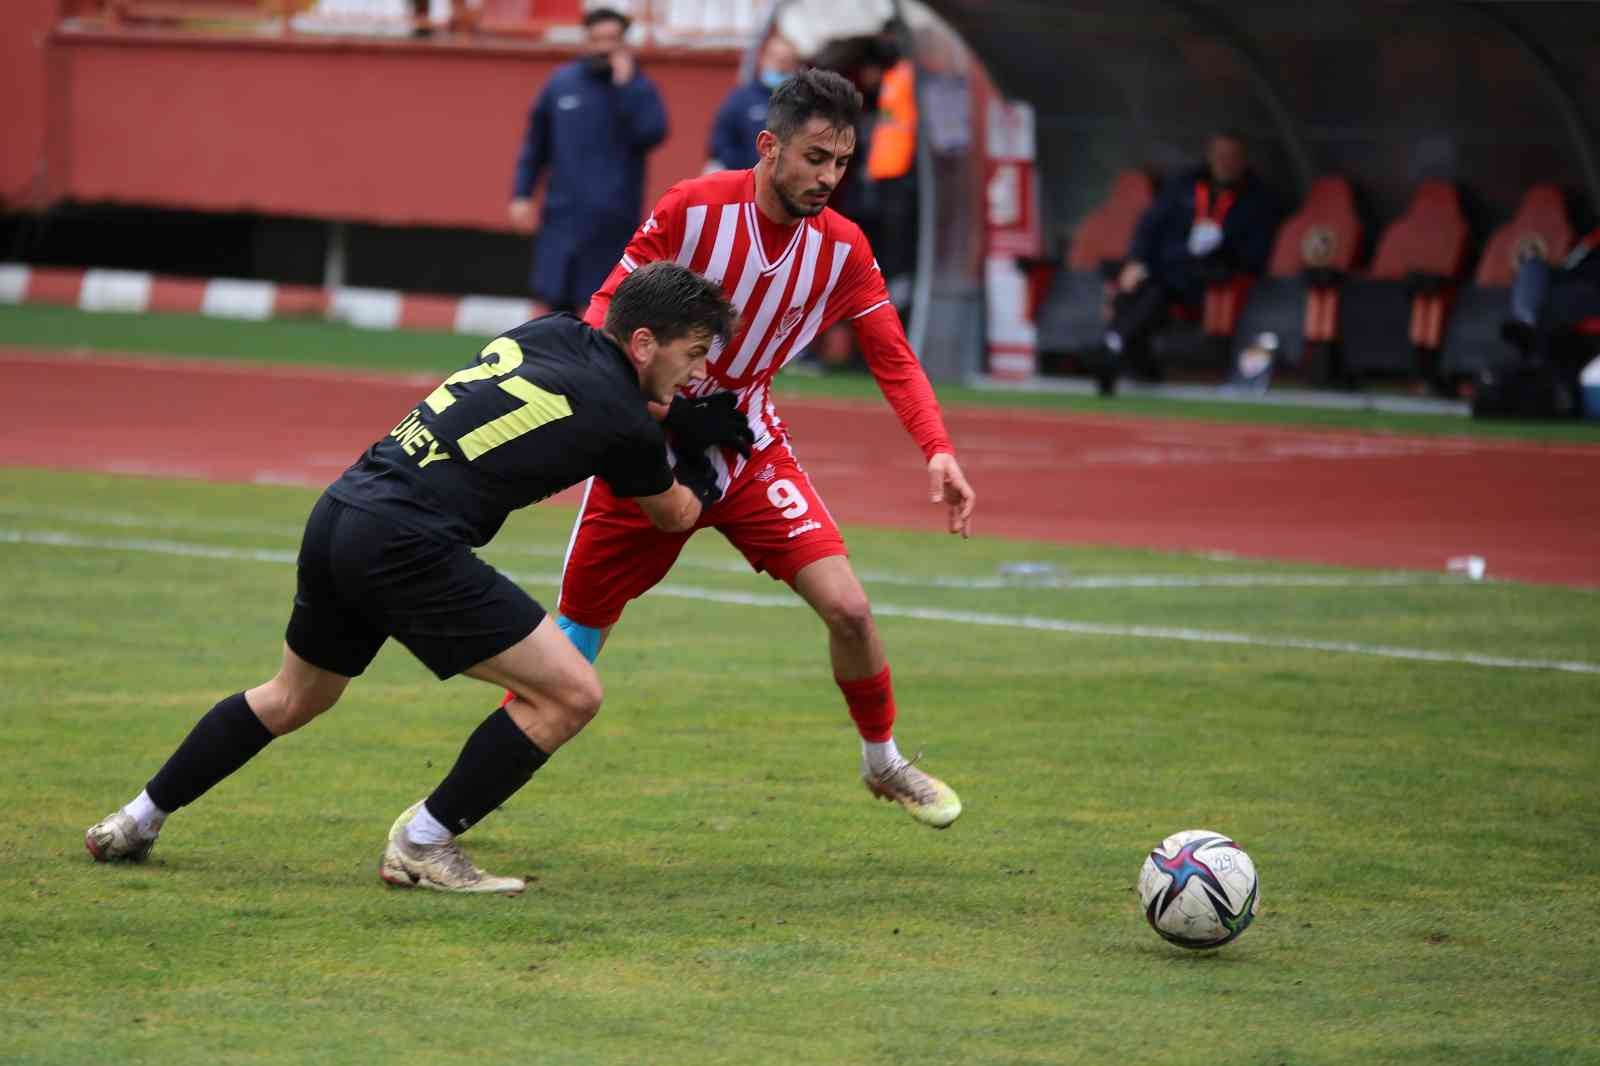 TFF 3. Lig: Gümüşhane Sportif Faaliyetler: 0 - Edirnespor: 1 #gumushane